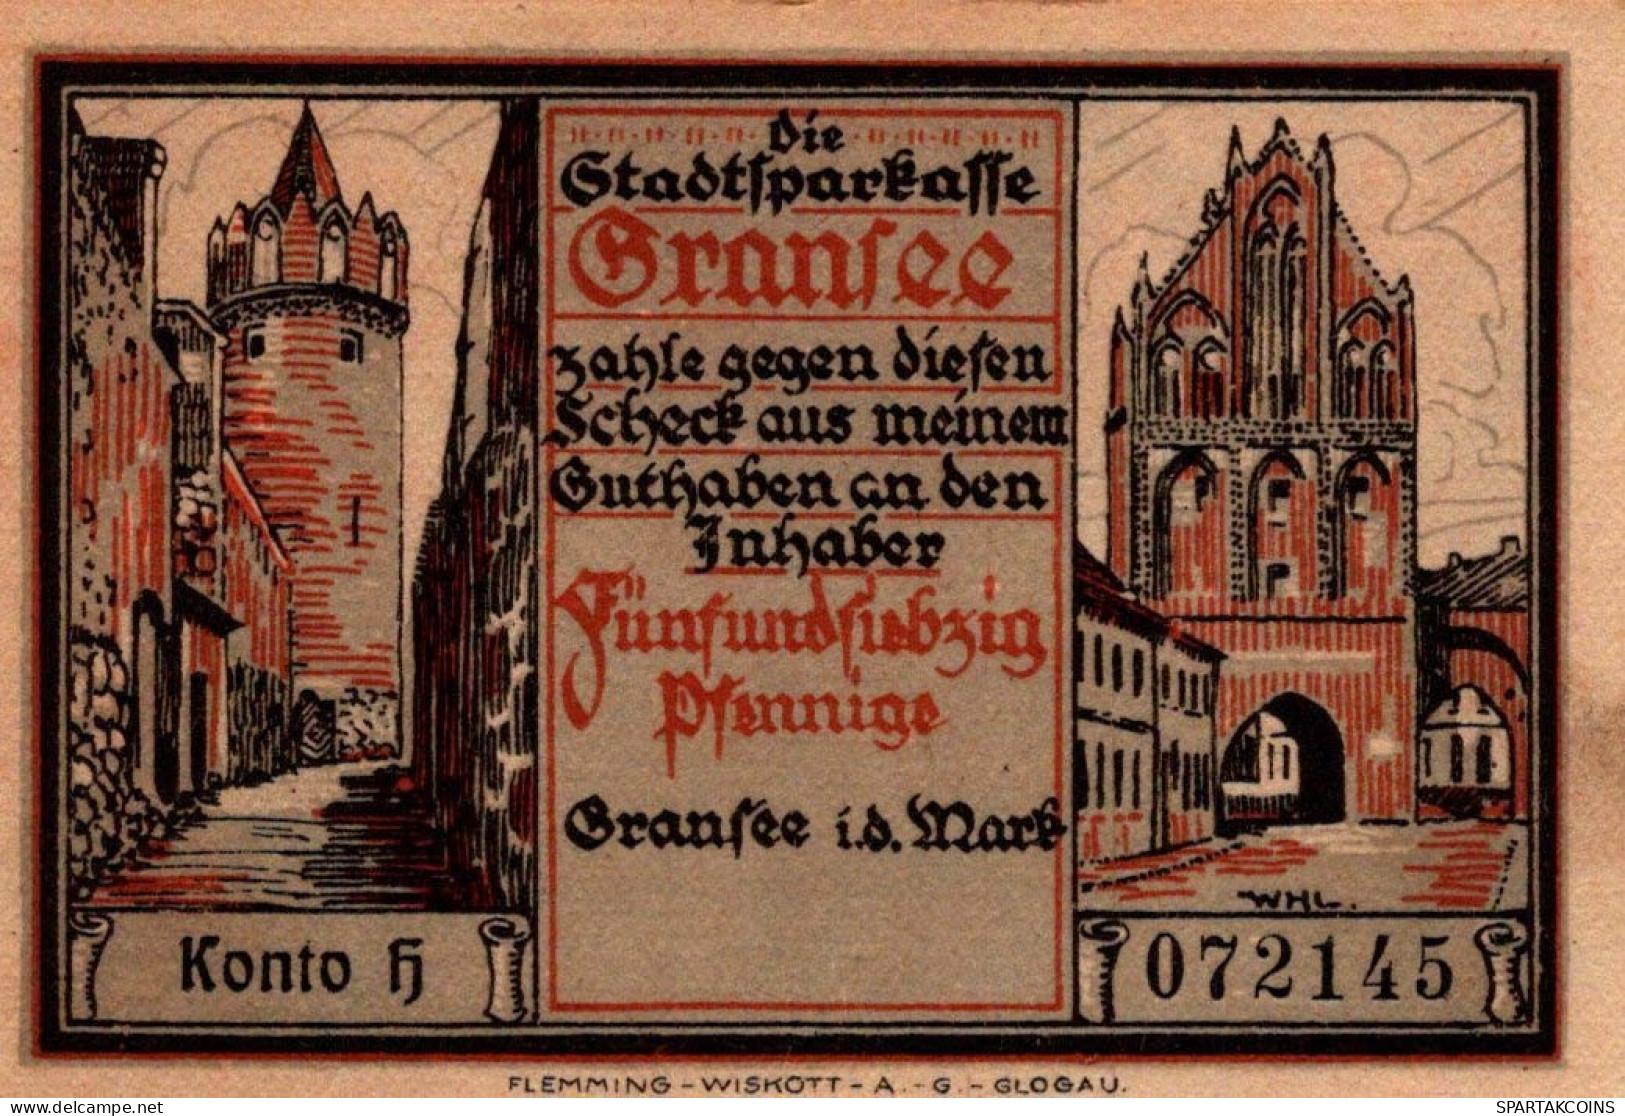 75 PFENNIG 1921 Stadt GRANSEE Brandenburg UNC DEUTSCHLAND Notgeld #PD034 - [11] Local Banknote Issues